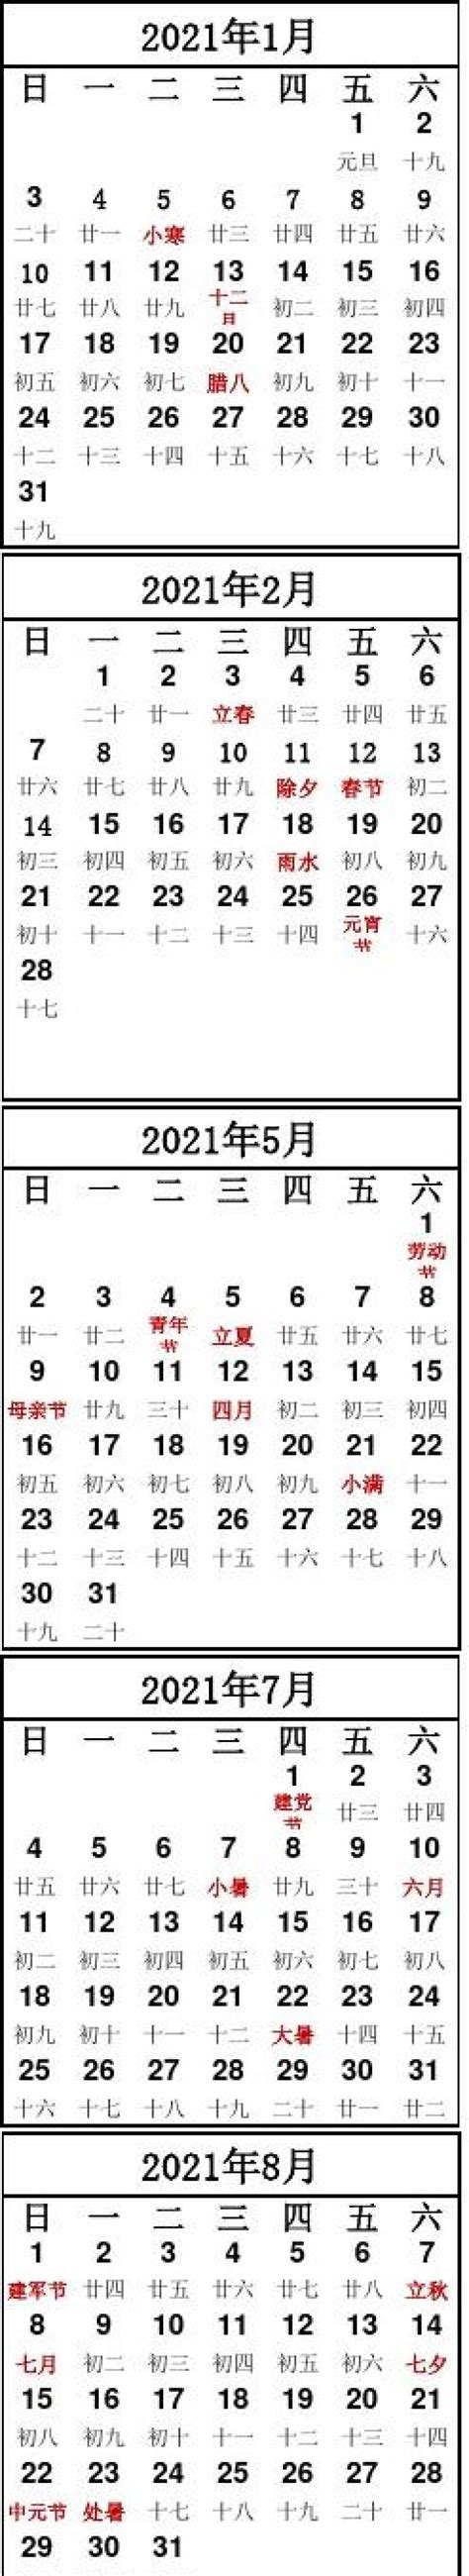 2021日曆表 – Raraoys